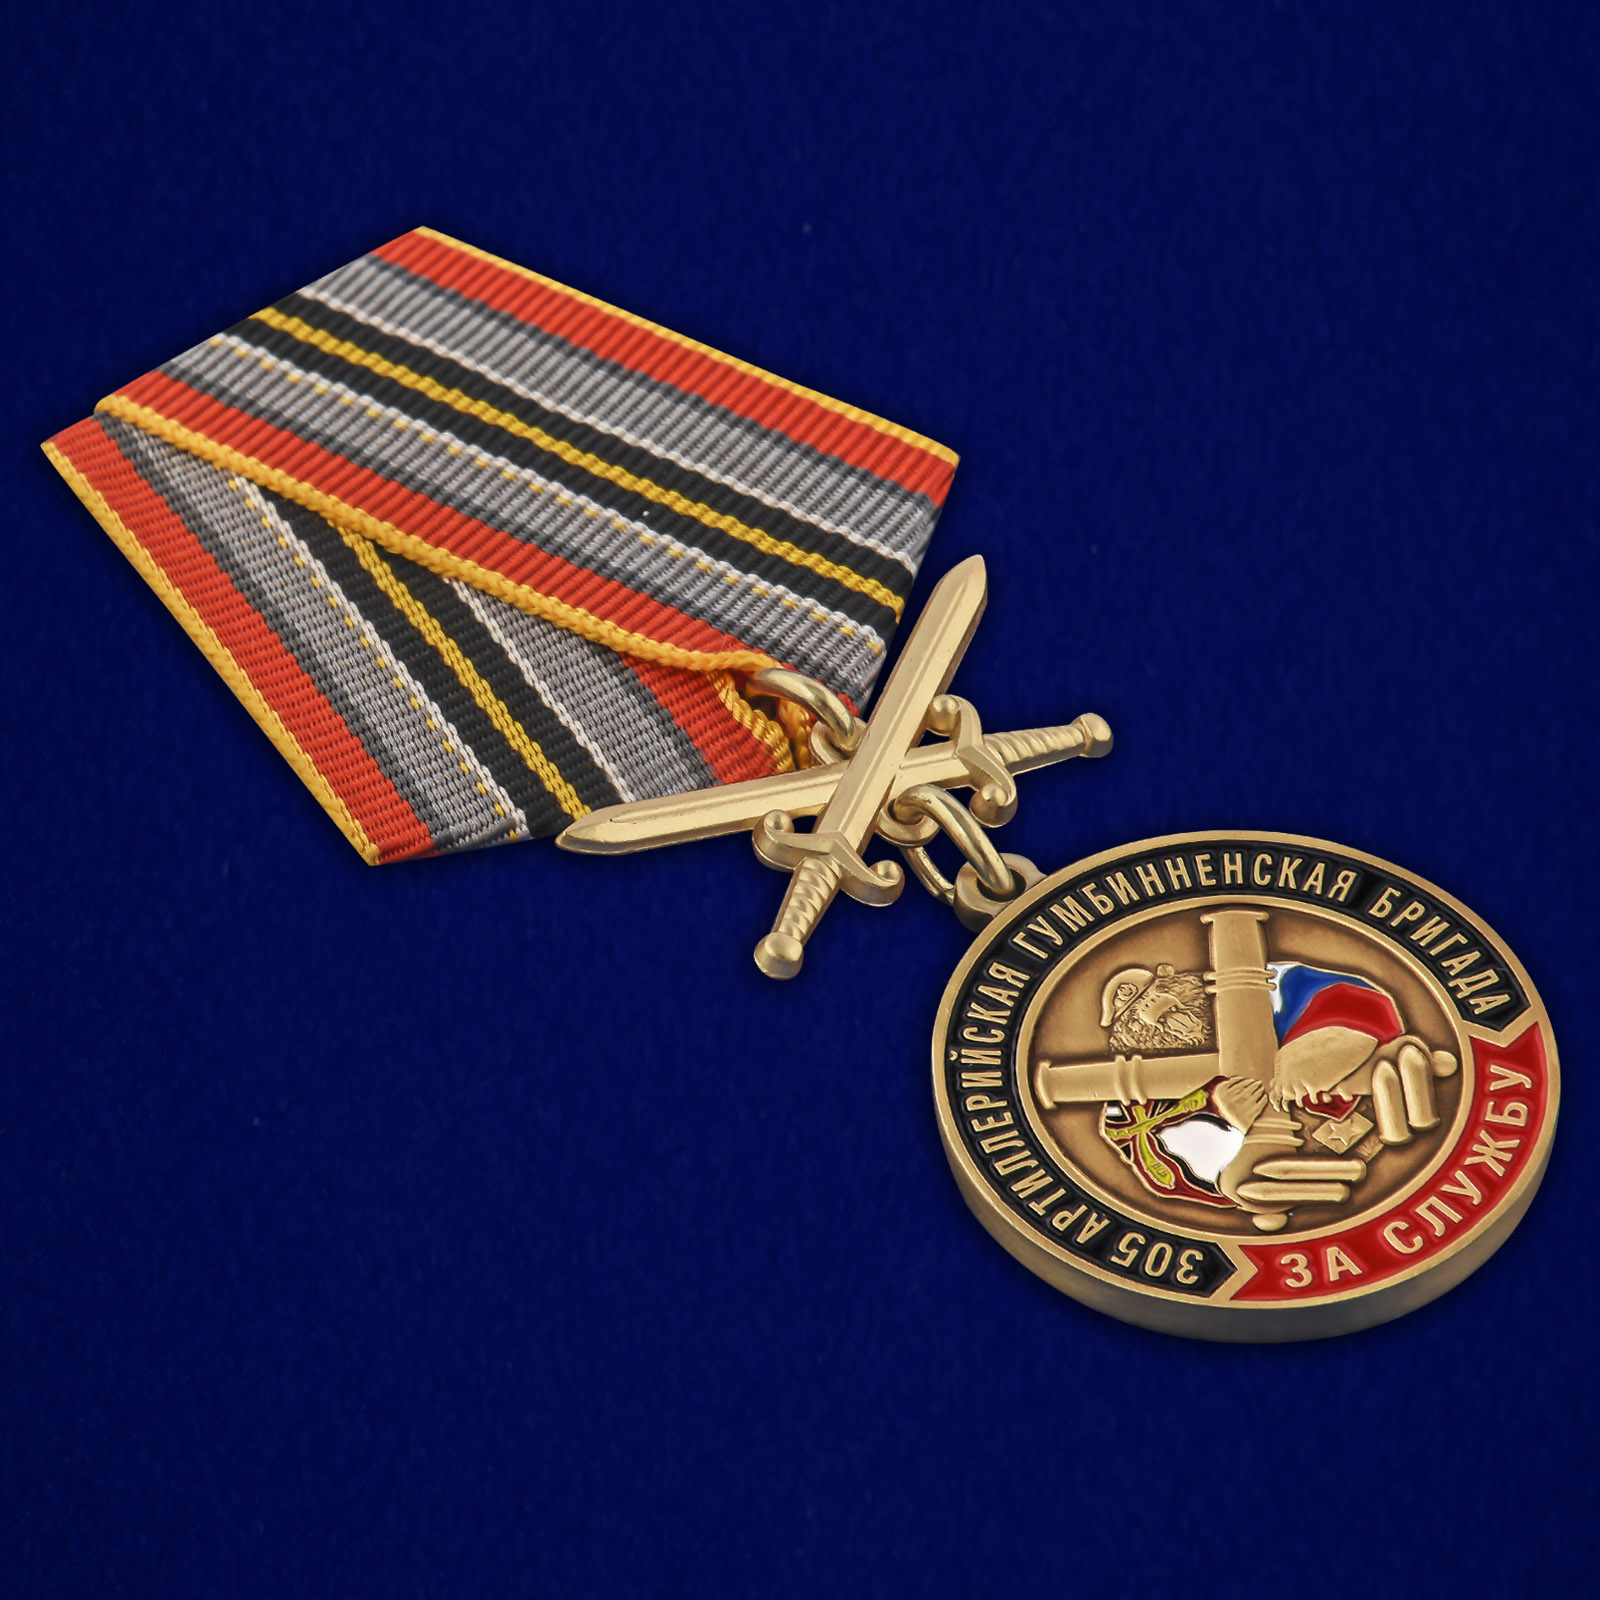 Купить медаль РВиА "За службу в 305-ой артиллерийской бригаде"